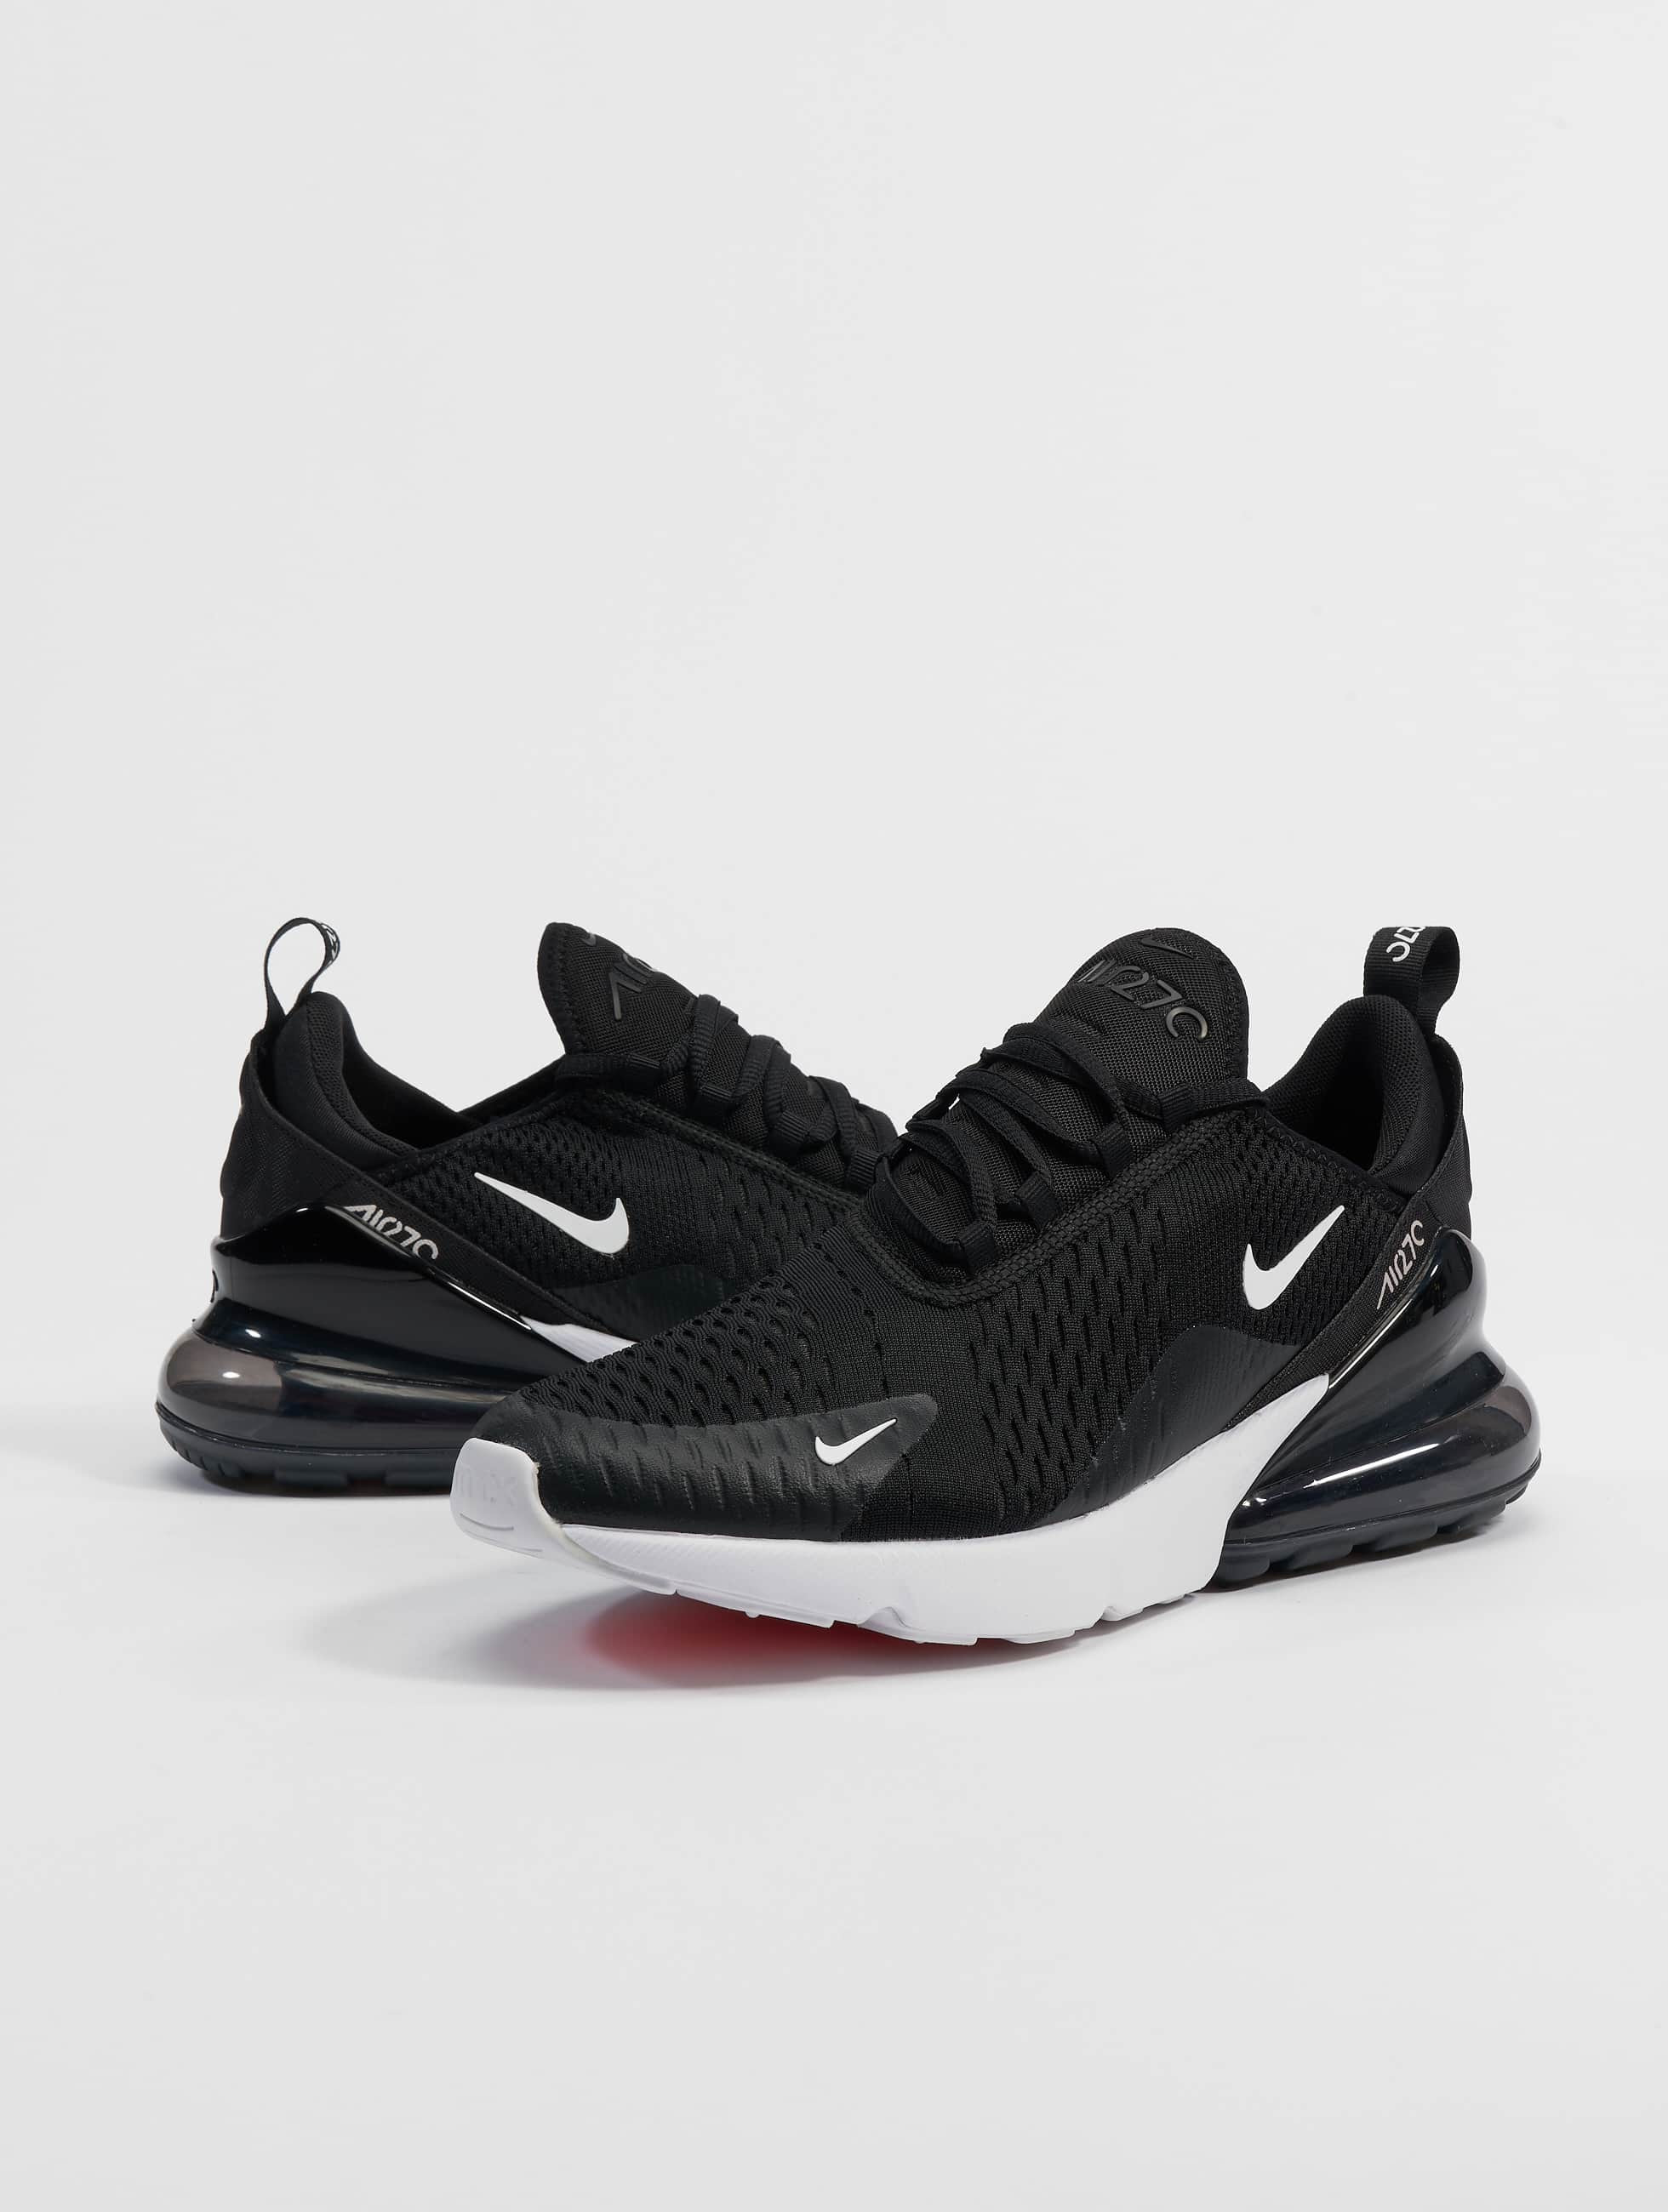 Ocurrencia diseñador Andrew Halliday Nike Zapato / Zapatillas de deporte Air Max 270 en negro 444394